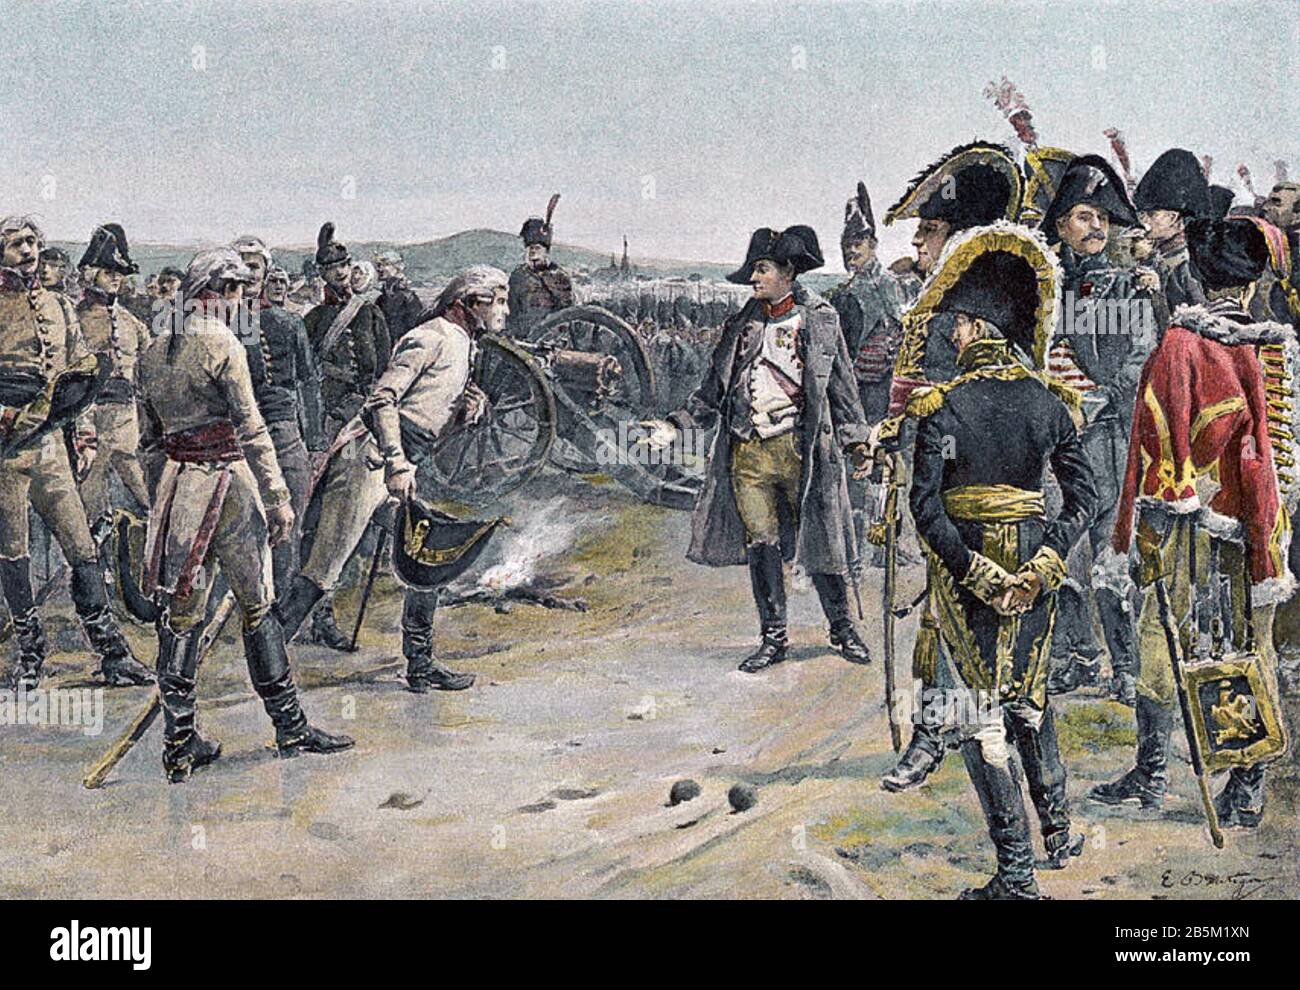 BATAILLE D'ULM 16-19 OCTOBRE 1805. Napoléon accepte la reddition des Autrichiens sous Karl Mack von Leiberich dans une illustration de 1906. Banque D'Images